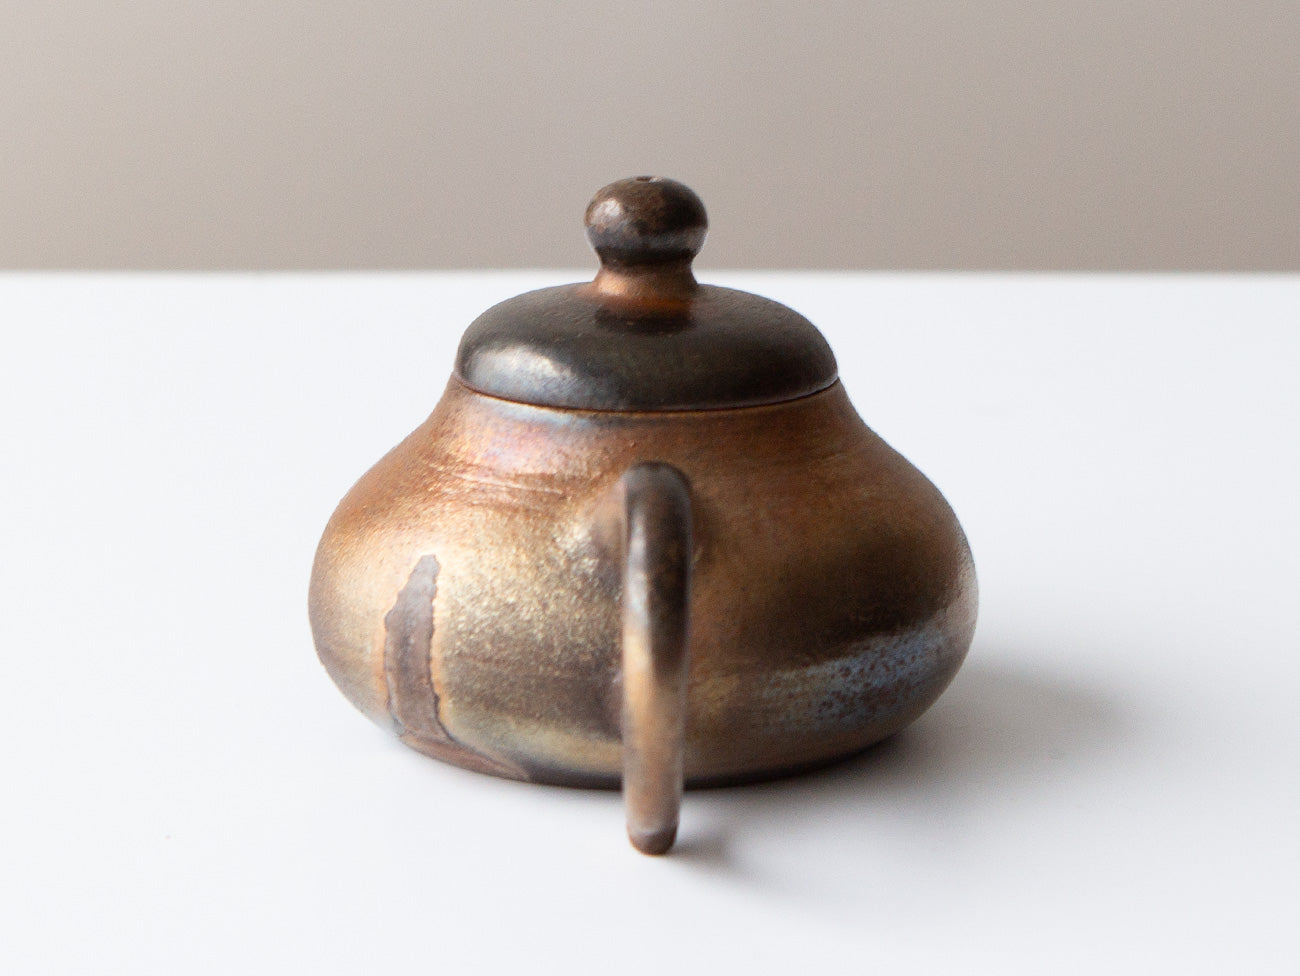 Bronze Teapot, No. 8